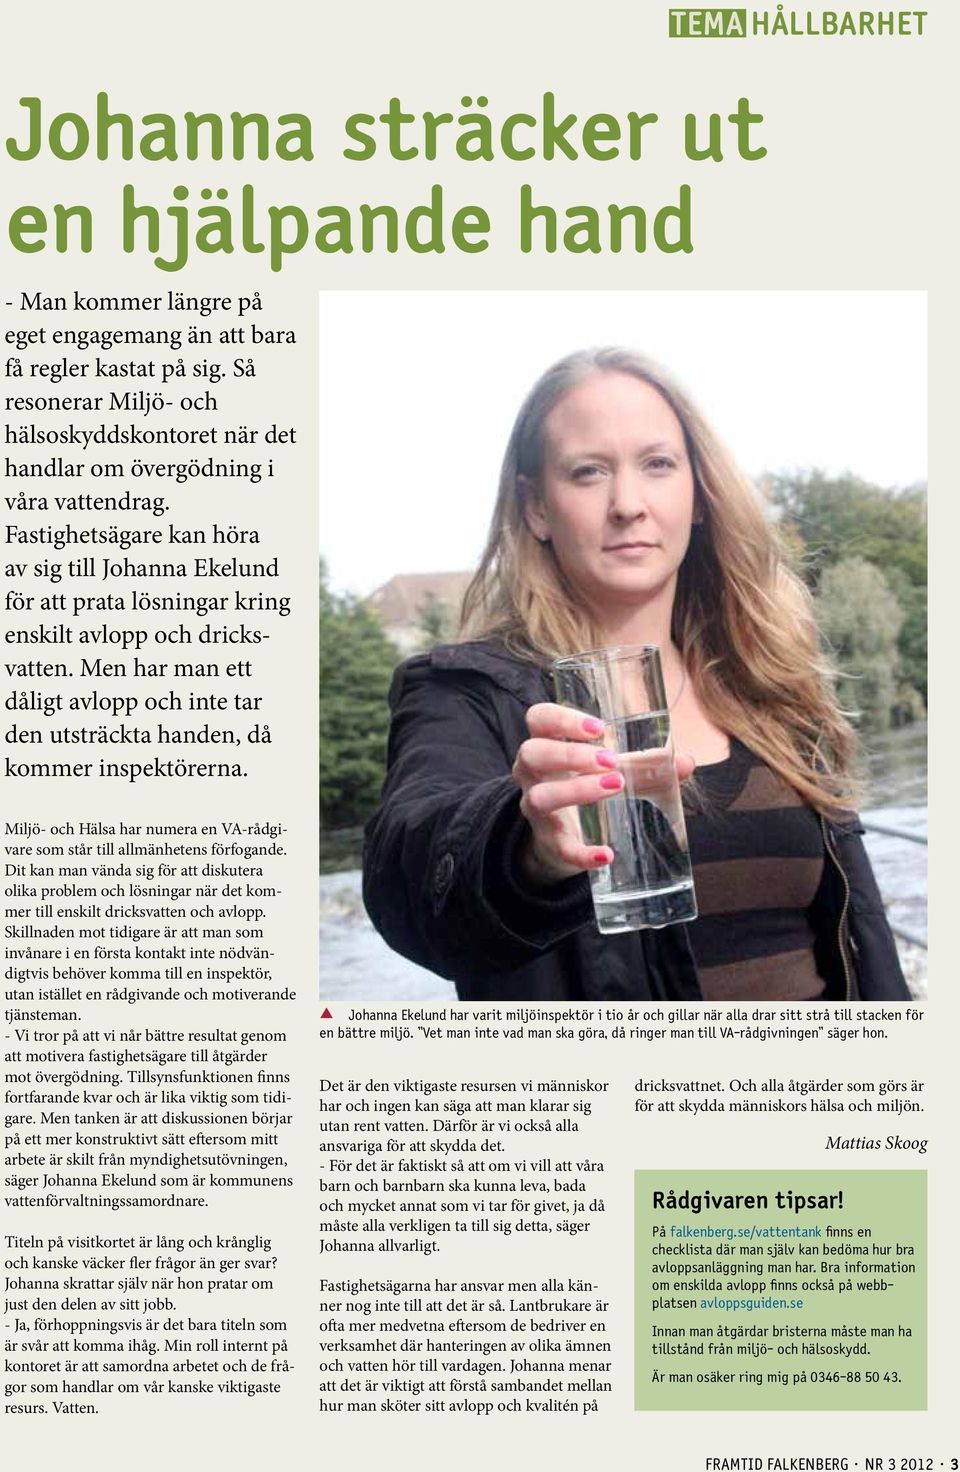 Fastighetsägare kan höra av sig till Johanna Ekelund för att prata lösningar kring enskilt avlopp och dricksvatten.